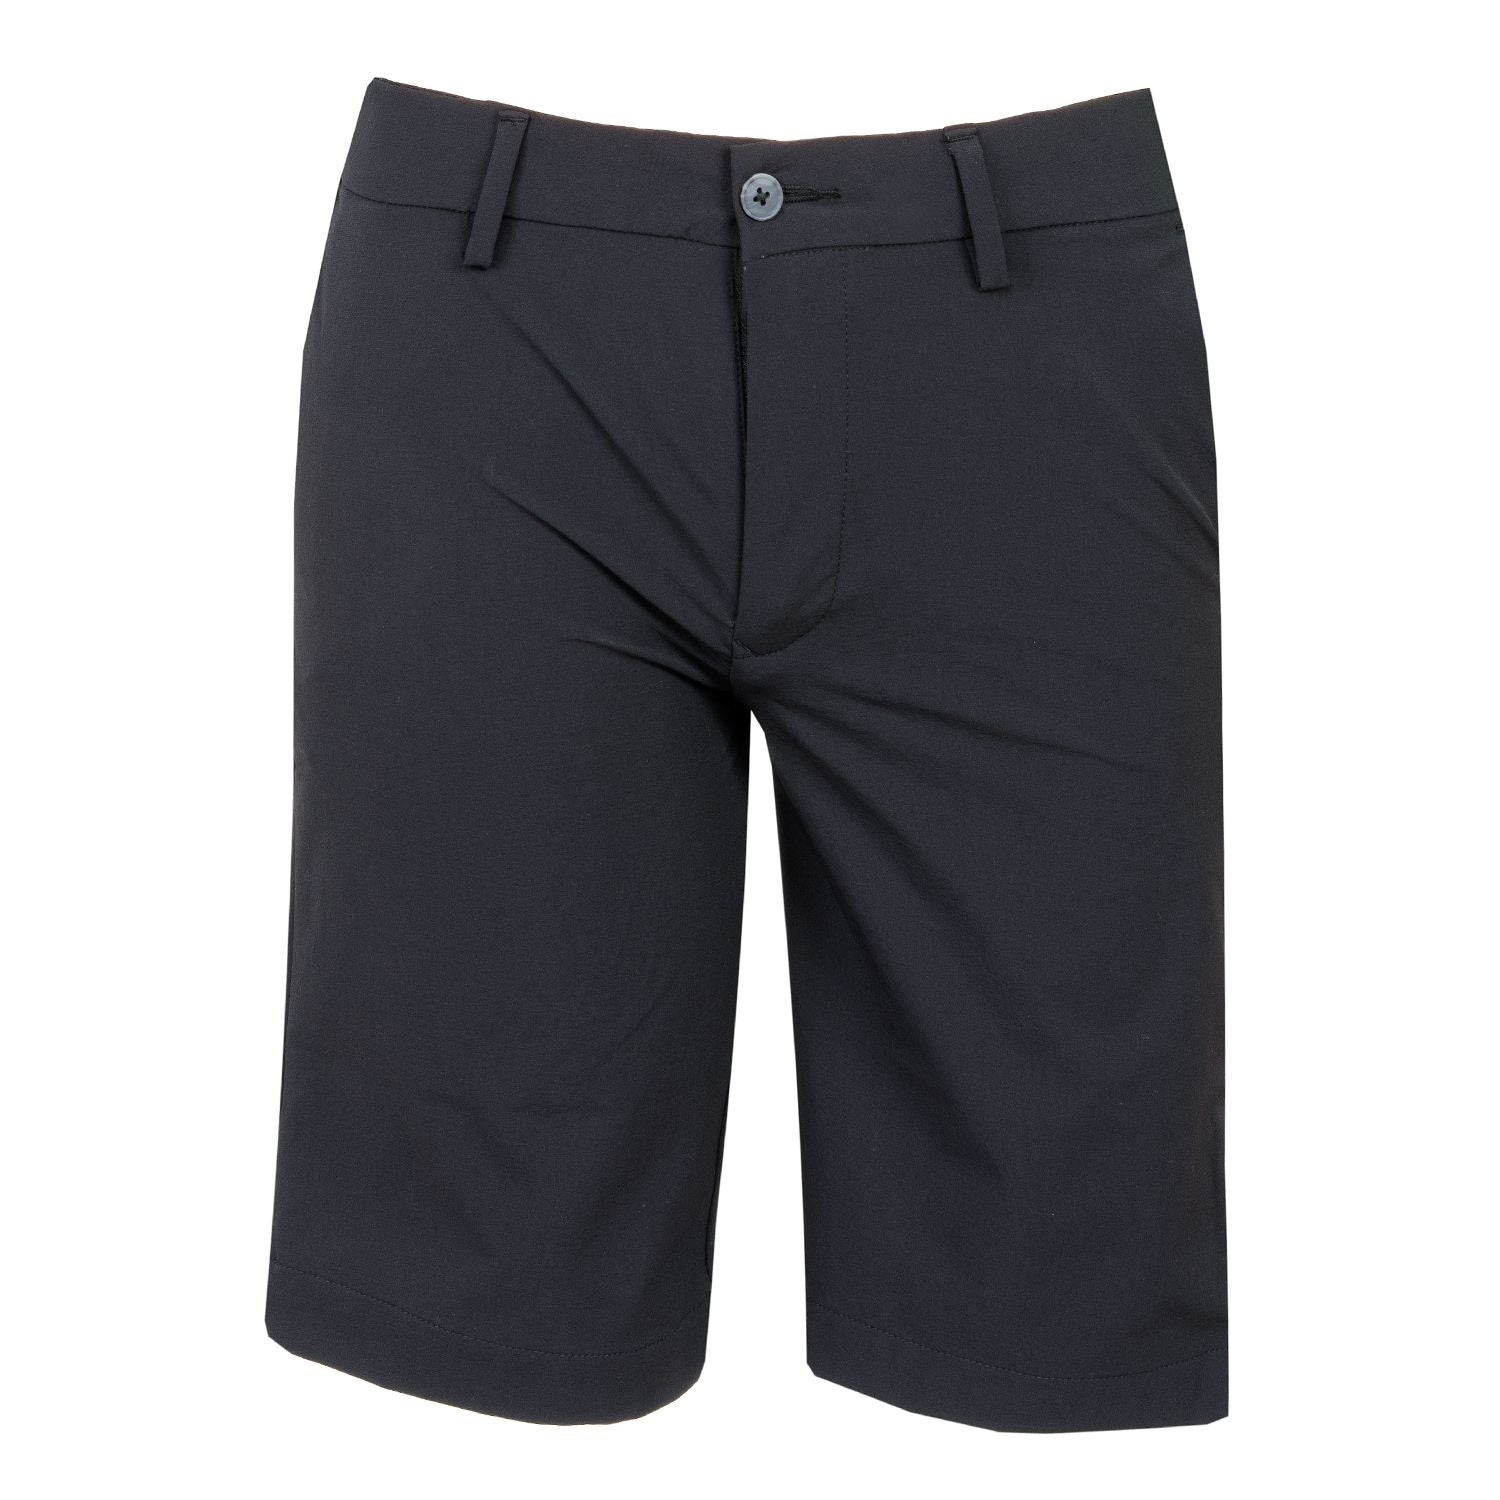 Junior Golf Shorts - Black